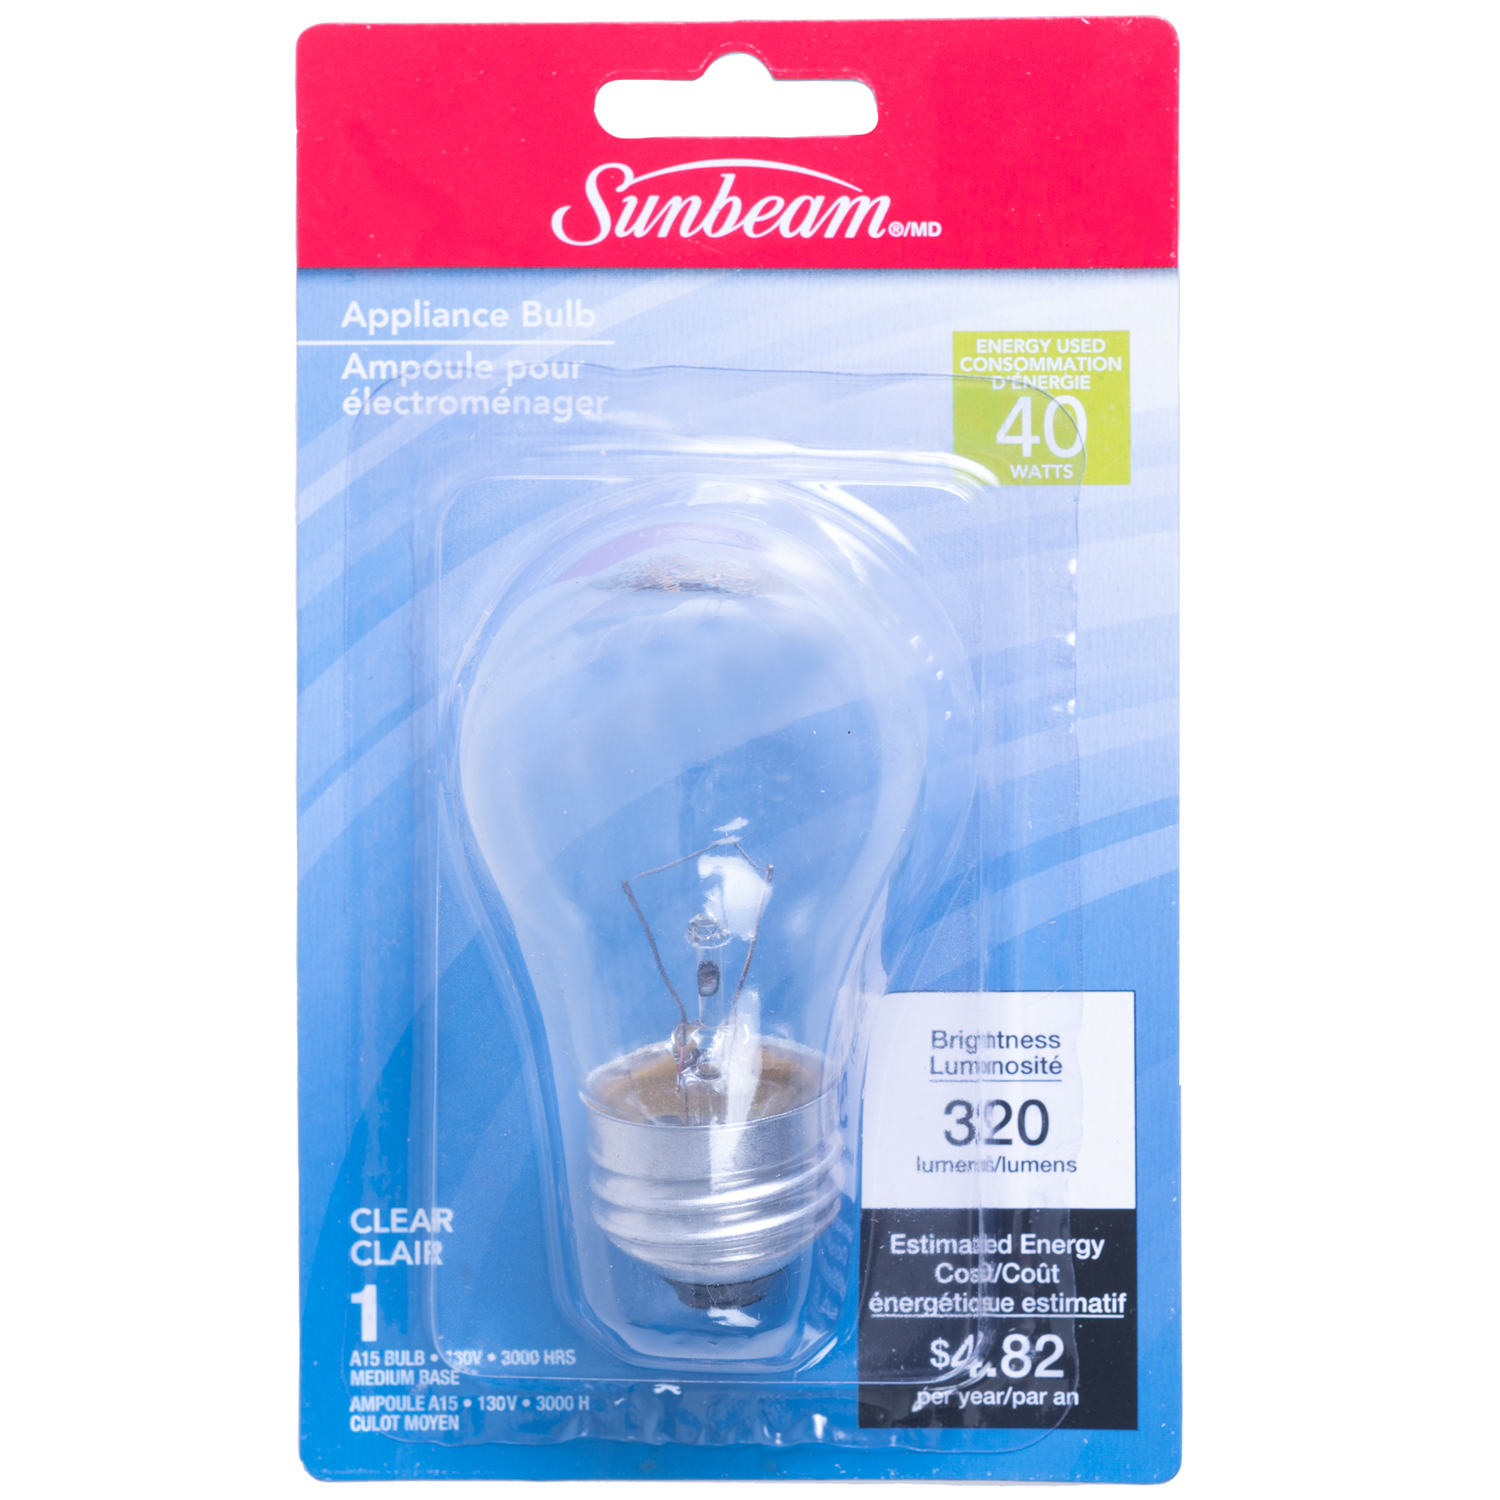 Sunbeam - A15 appliance light bulb, 40W